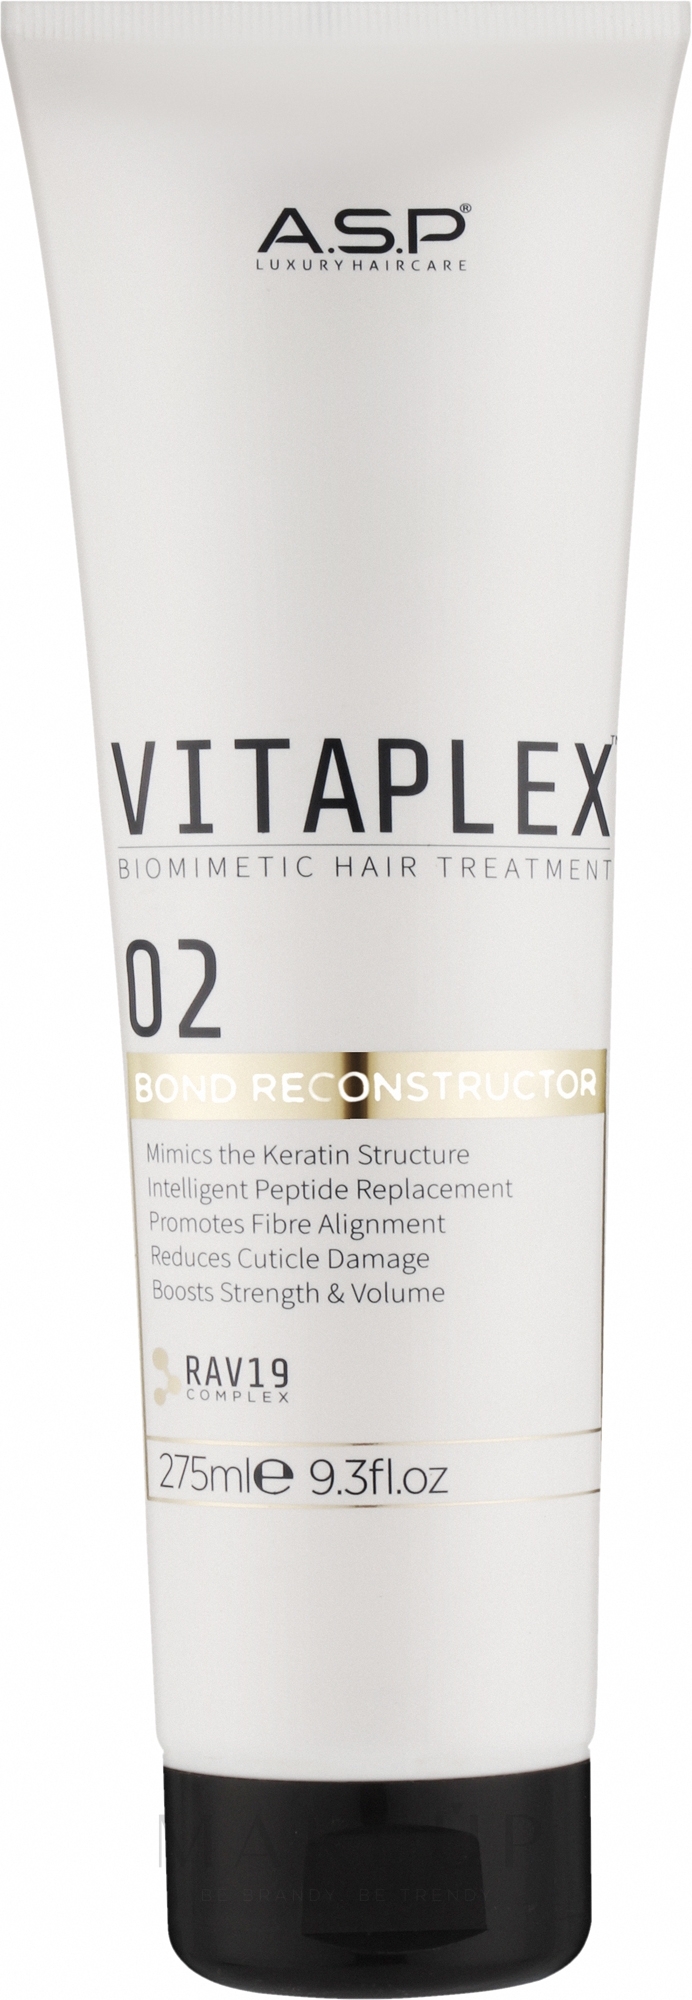 Nanoschutz für Haare 2 - Affinage Vitaplex Biomimetic Hair Treatment Part 2 Reconstructor — Bild 275 ml